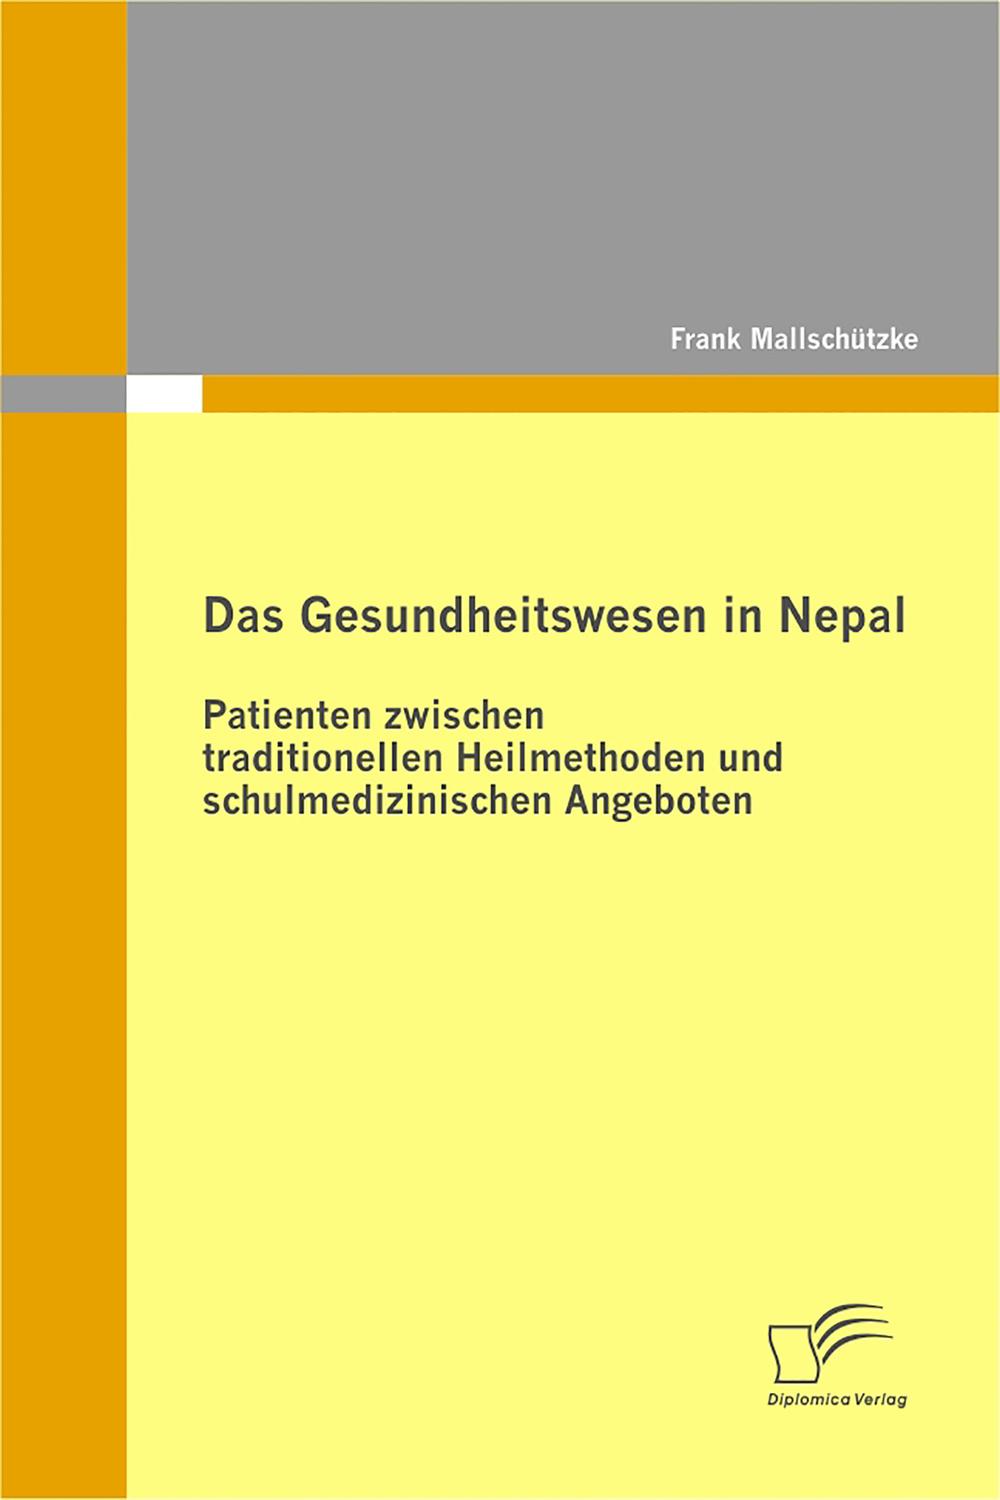 Das Gesundheitswesen in Nepal: Patienten zwischen traditionellen Heilmethoden und schulmedizinischen Angeboten - Frank Mallschützke